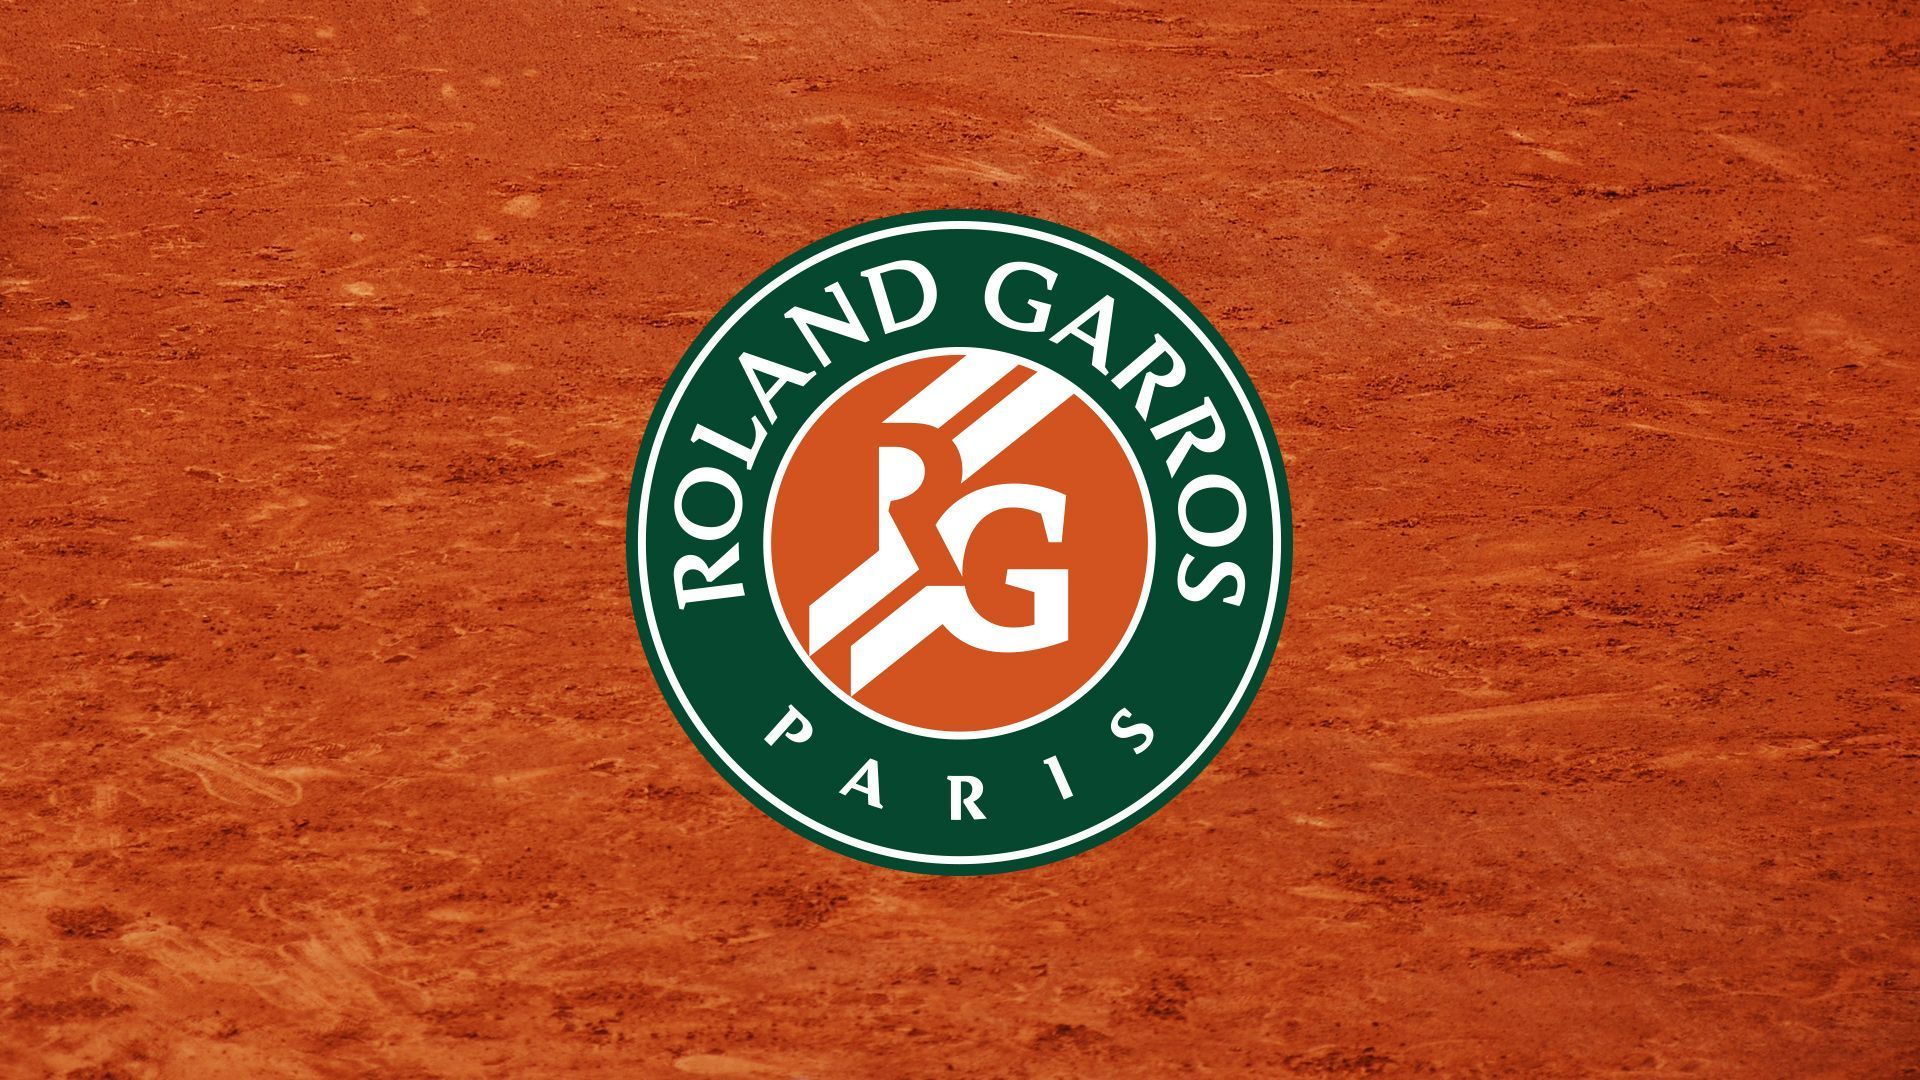 Roland Garros 2021 Wallpapers Wallpaper Cave